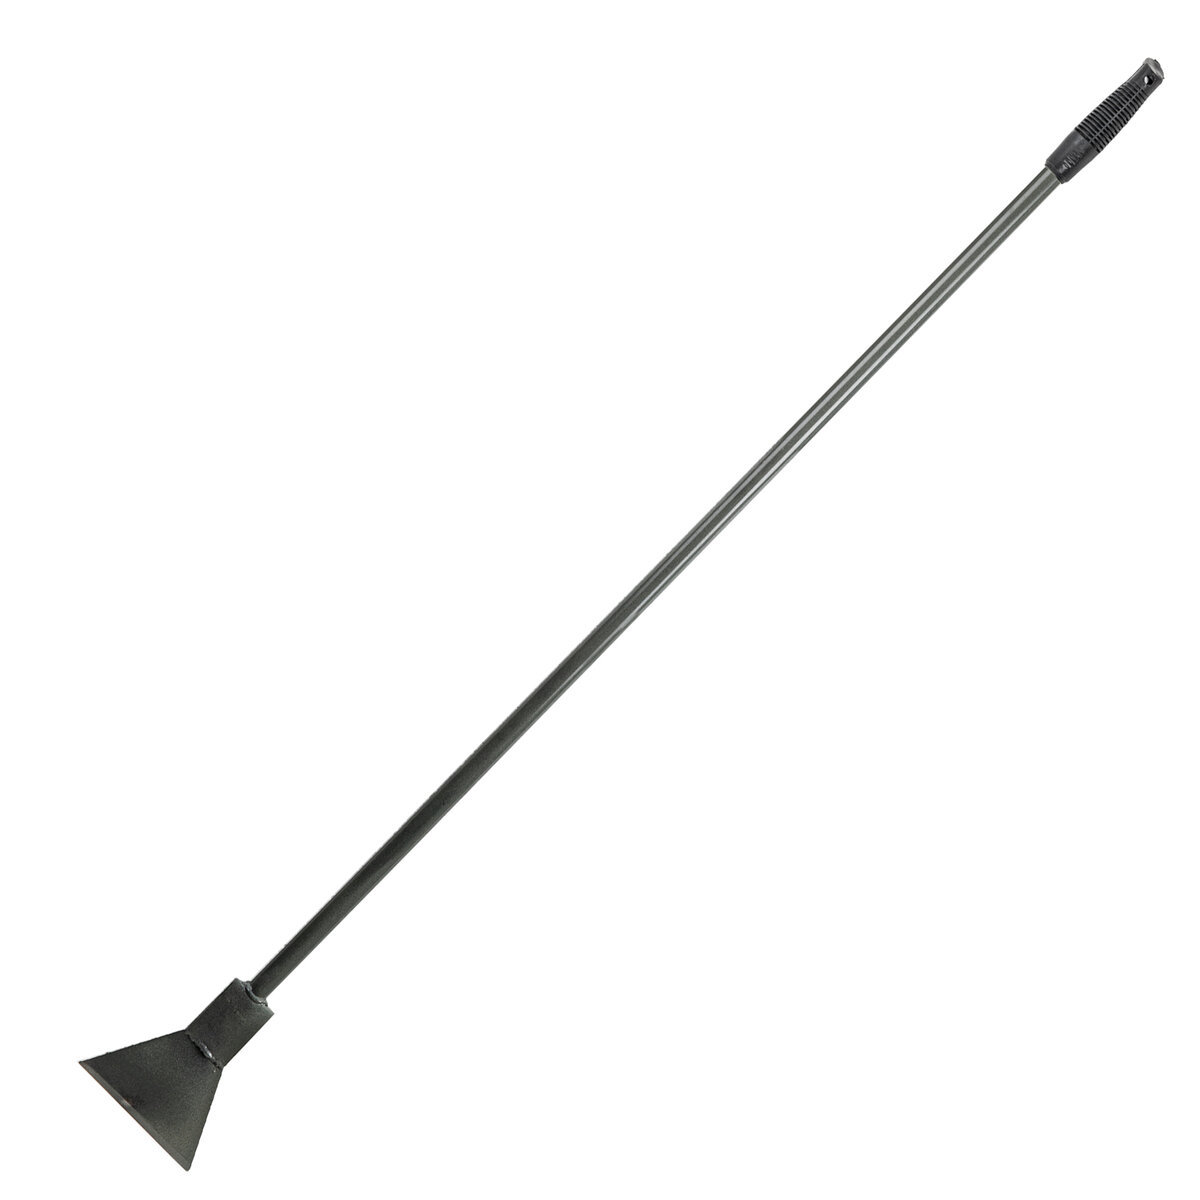 Ледоруб-топор с металлической ручкой ширина 15 см h 135 см Б-3 ️  .